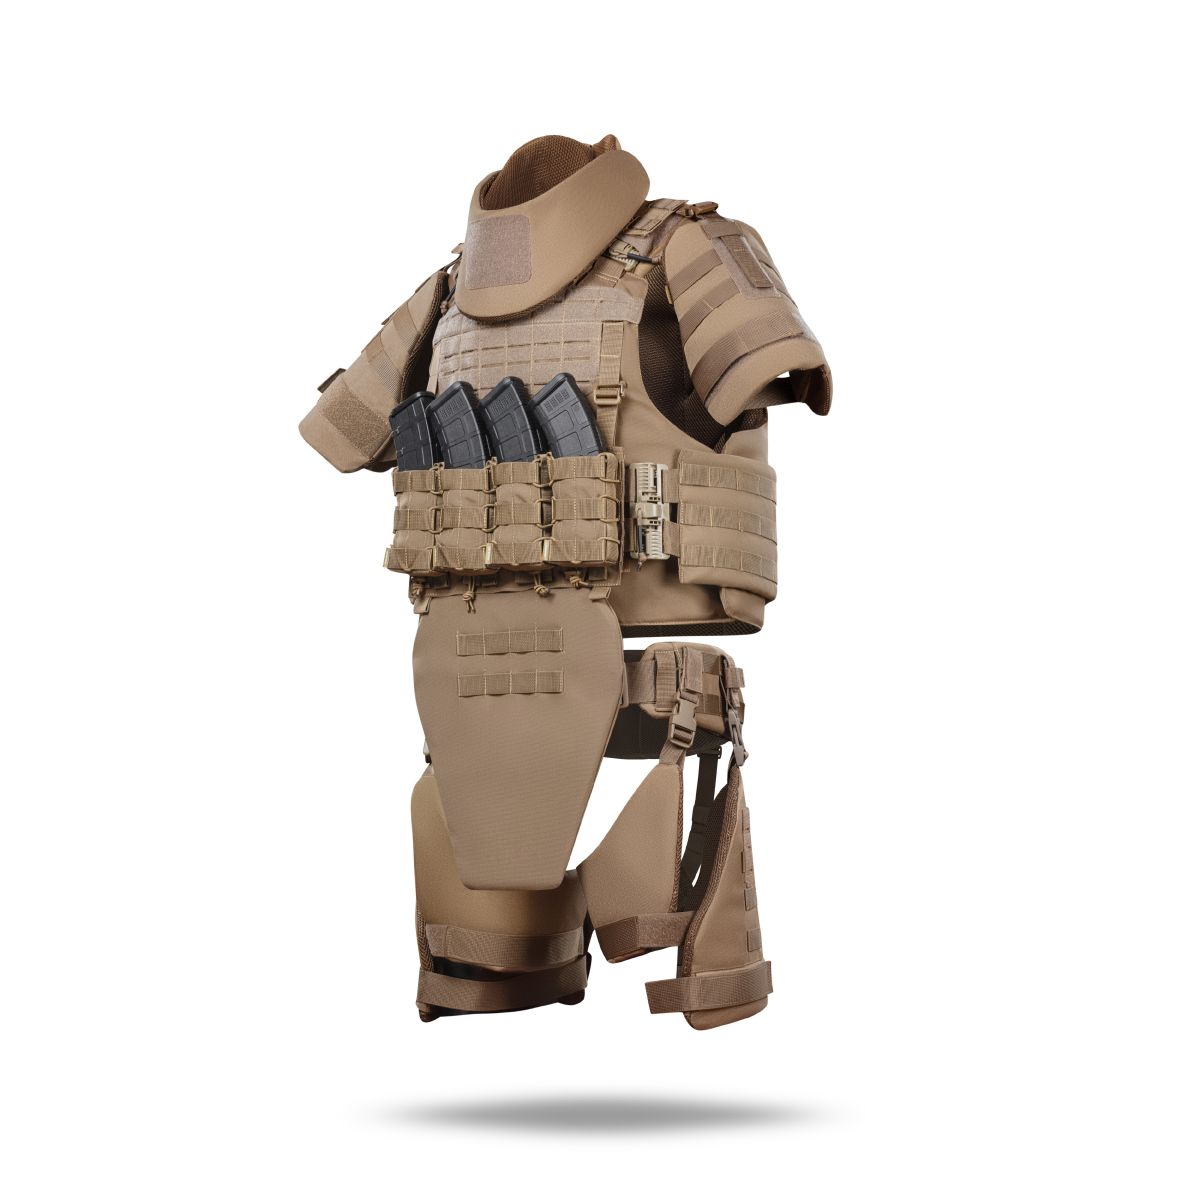 Бронекостюм A.T.A.S. (Advanced Tactical Armor Suit) Level II. Класс защиты – 2. Койот. L/XL